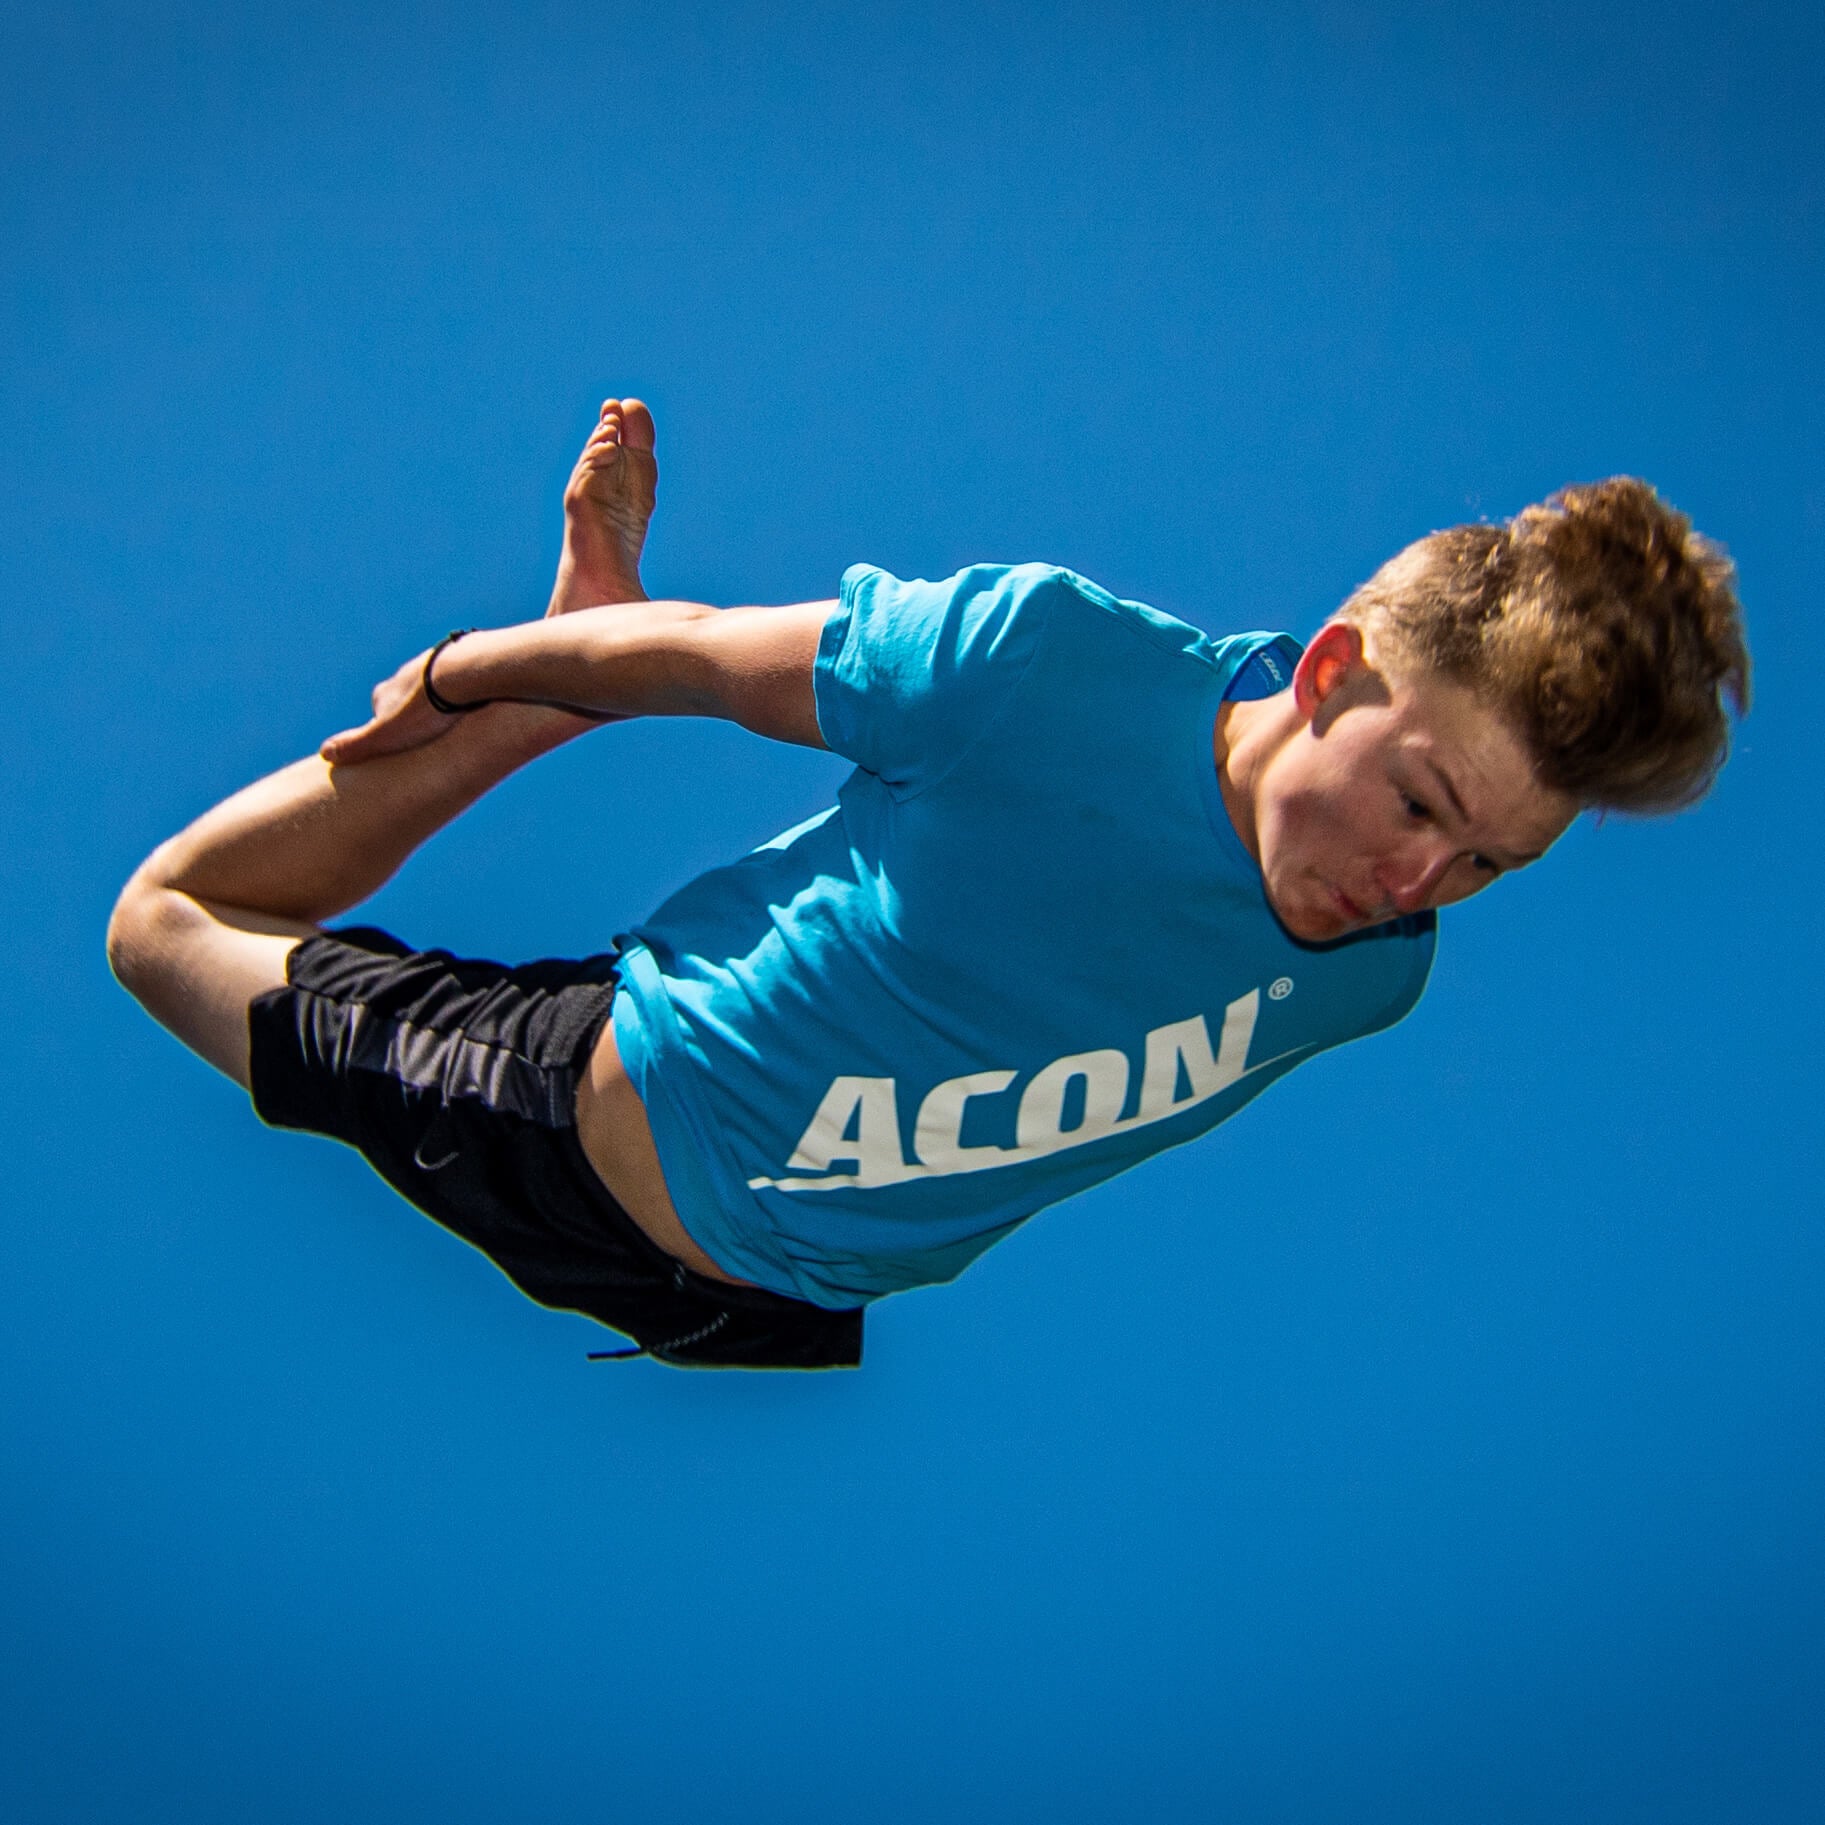 Poika sinisessä acon-t-paidassa tekee trampoliinihypyn.